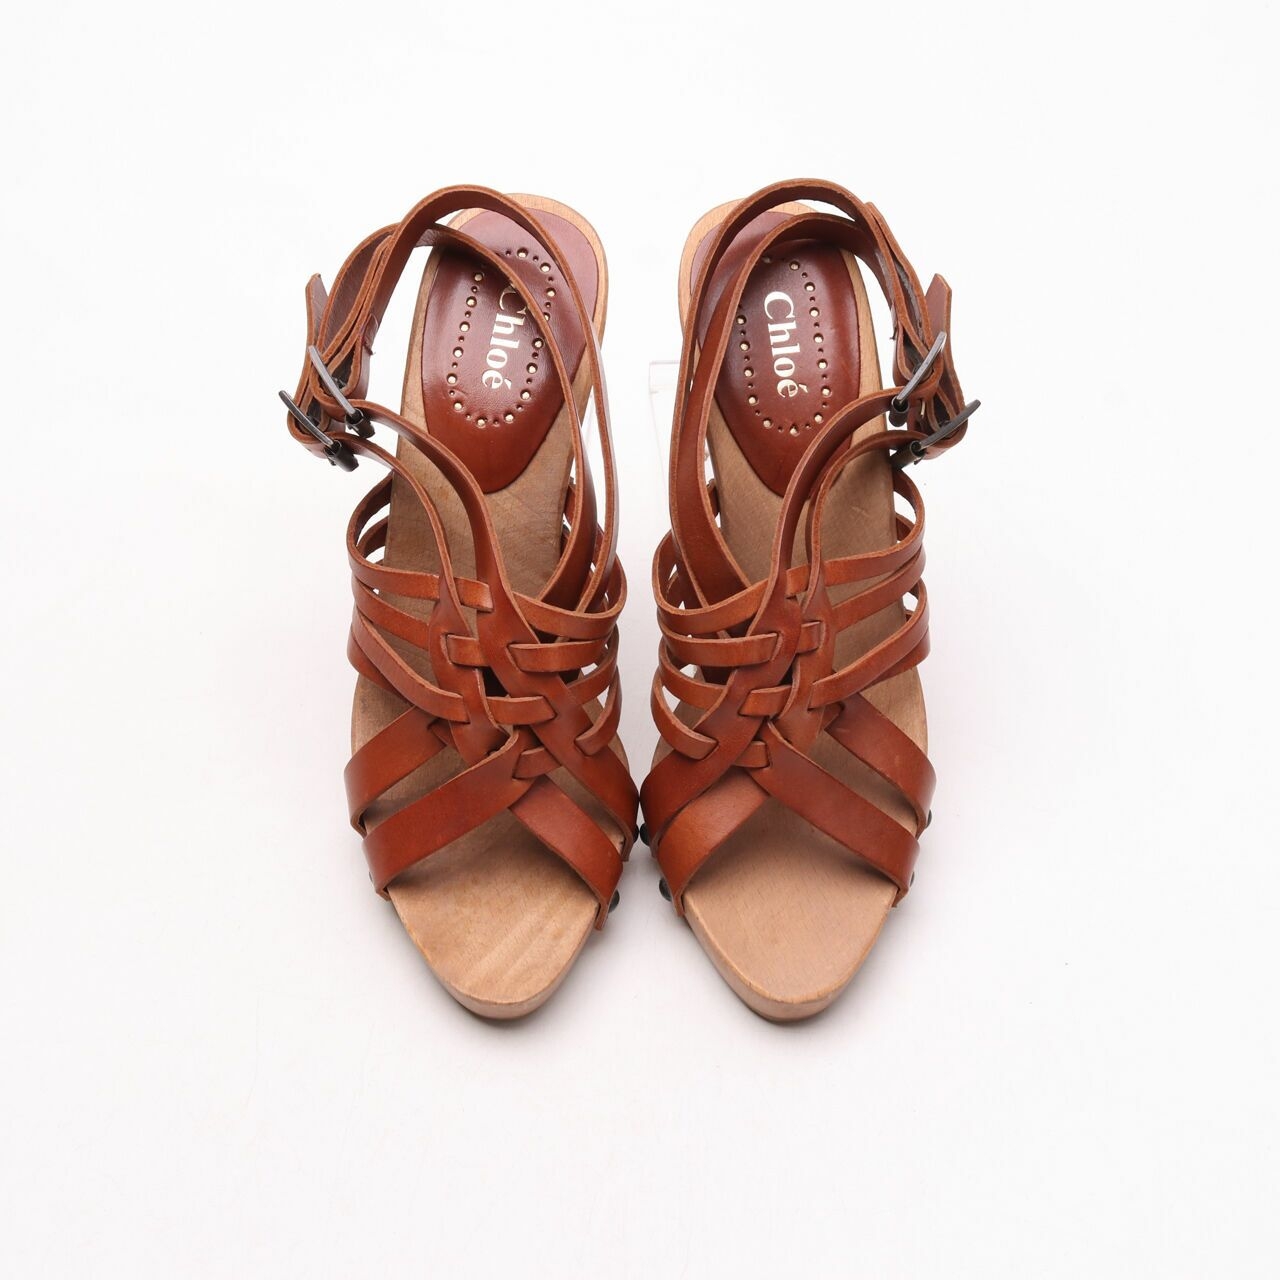 Chloe Vintage Wood Brown Heels